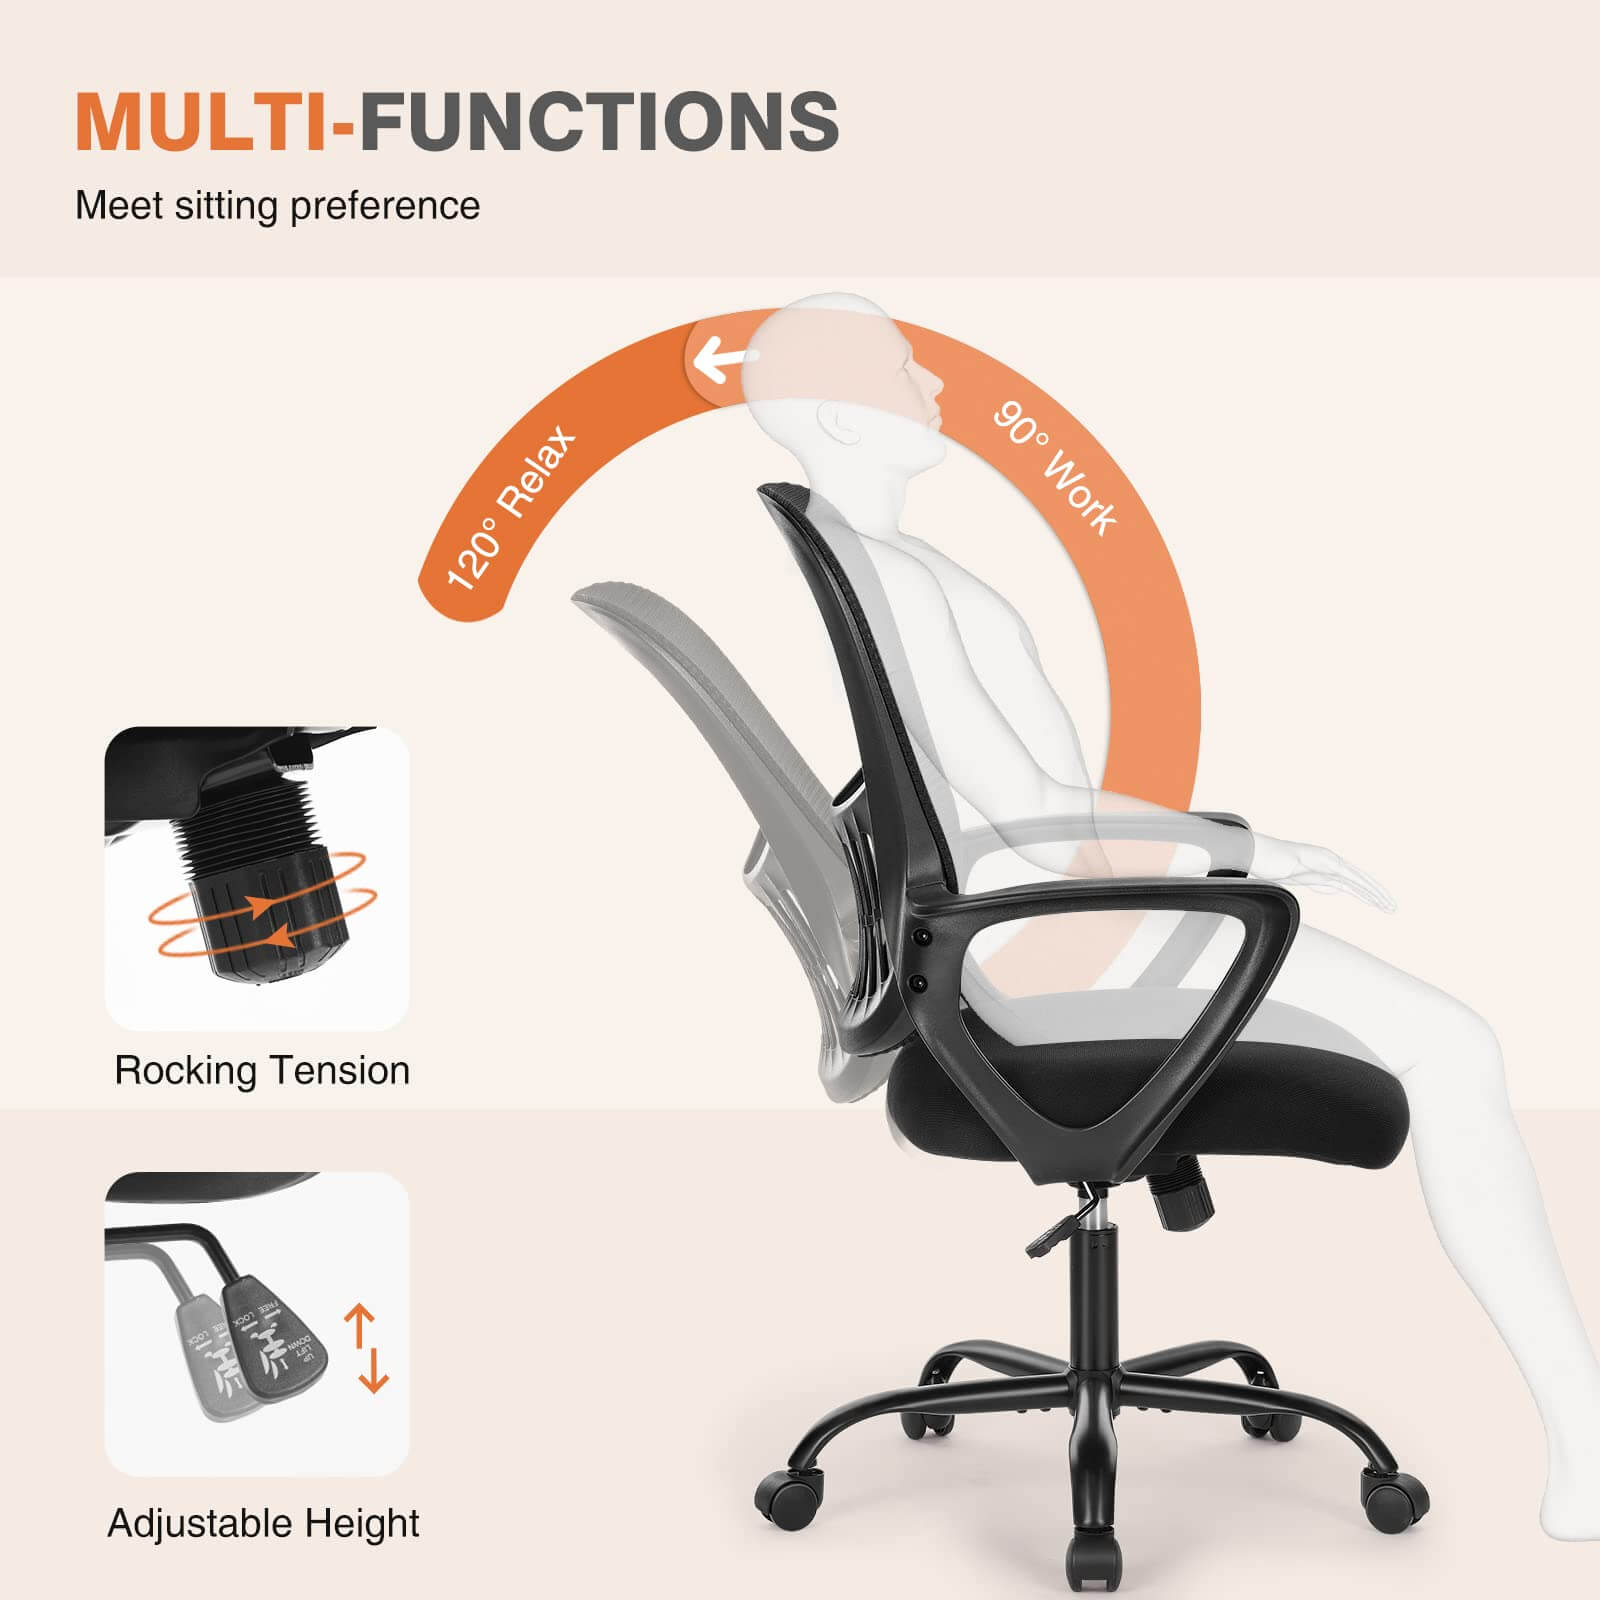 office-chair-ergonomic#Quantity_1 Chair#Color_Black